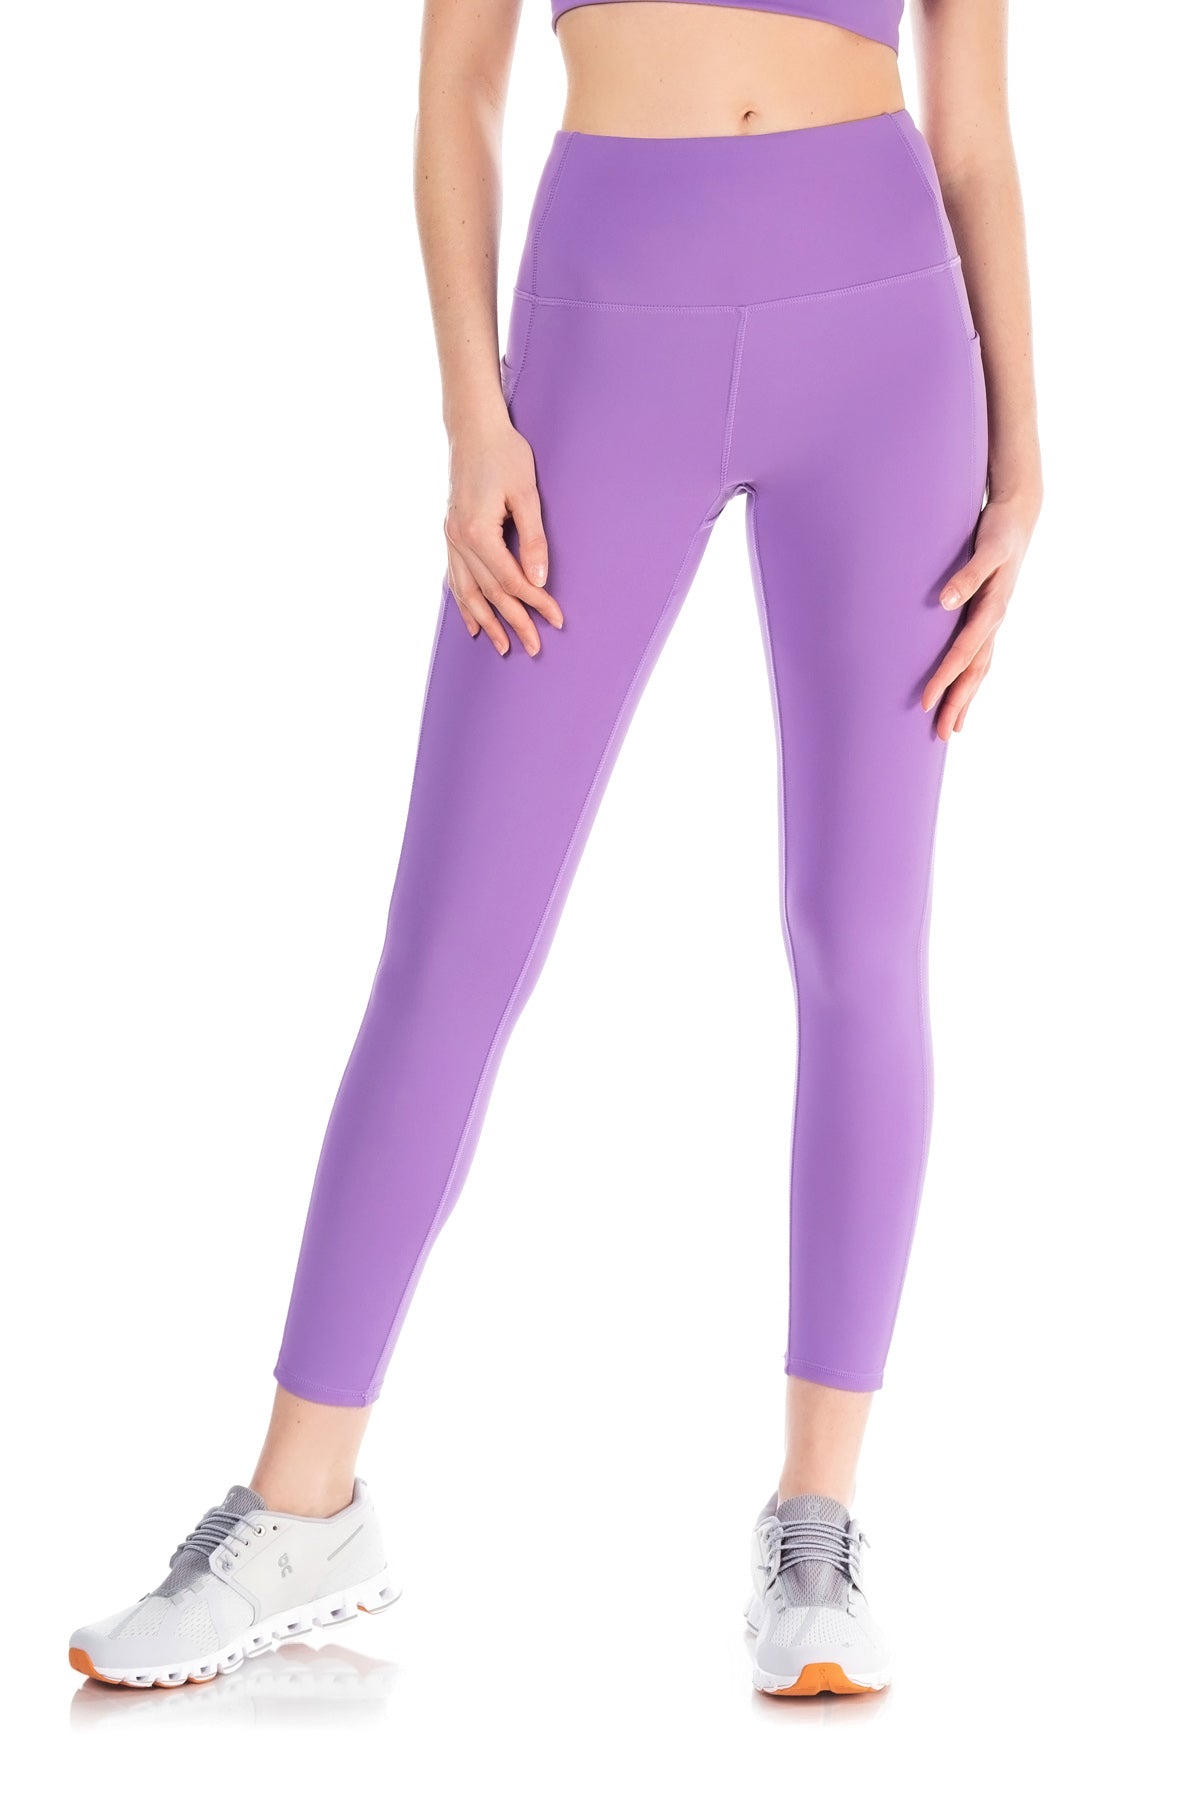 Yogalicious Lux Heather Rose Leggings XS  Rose leggings, Leggings, Clothes  design